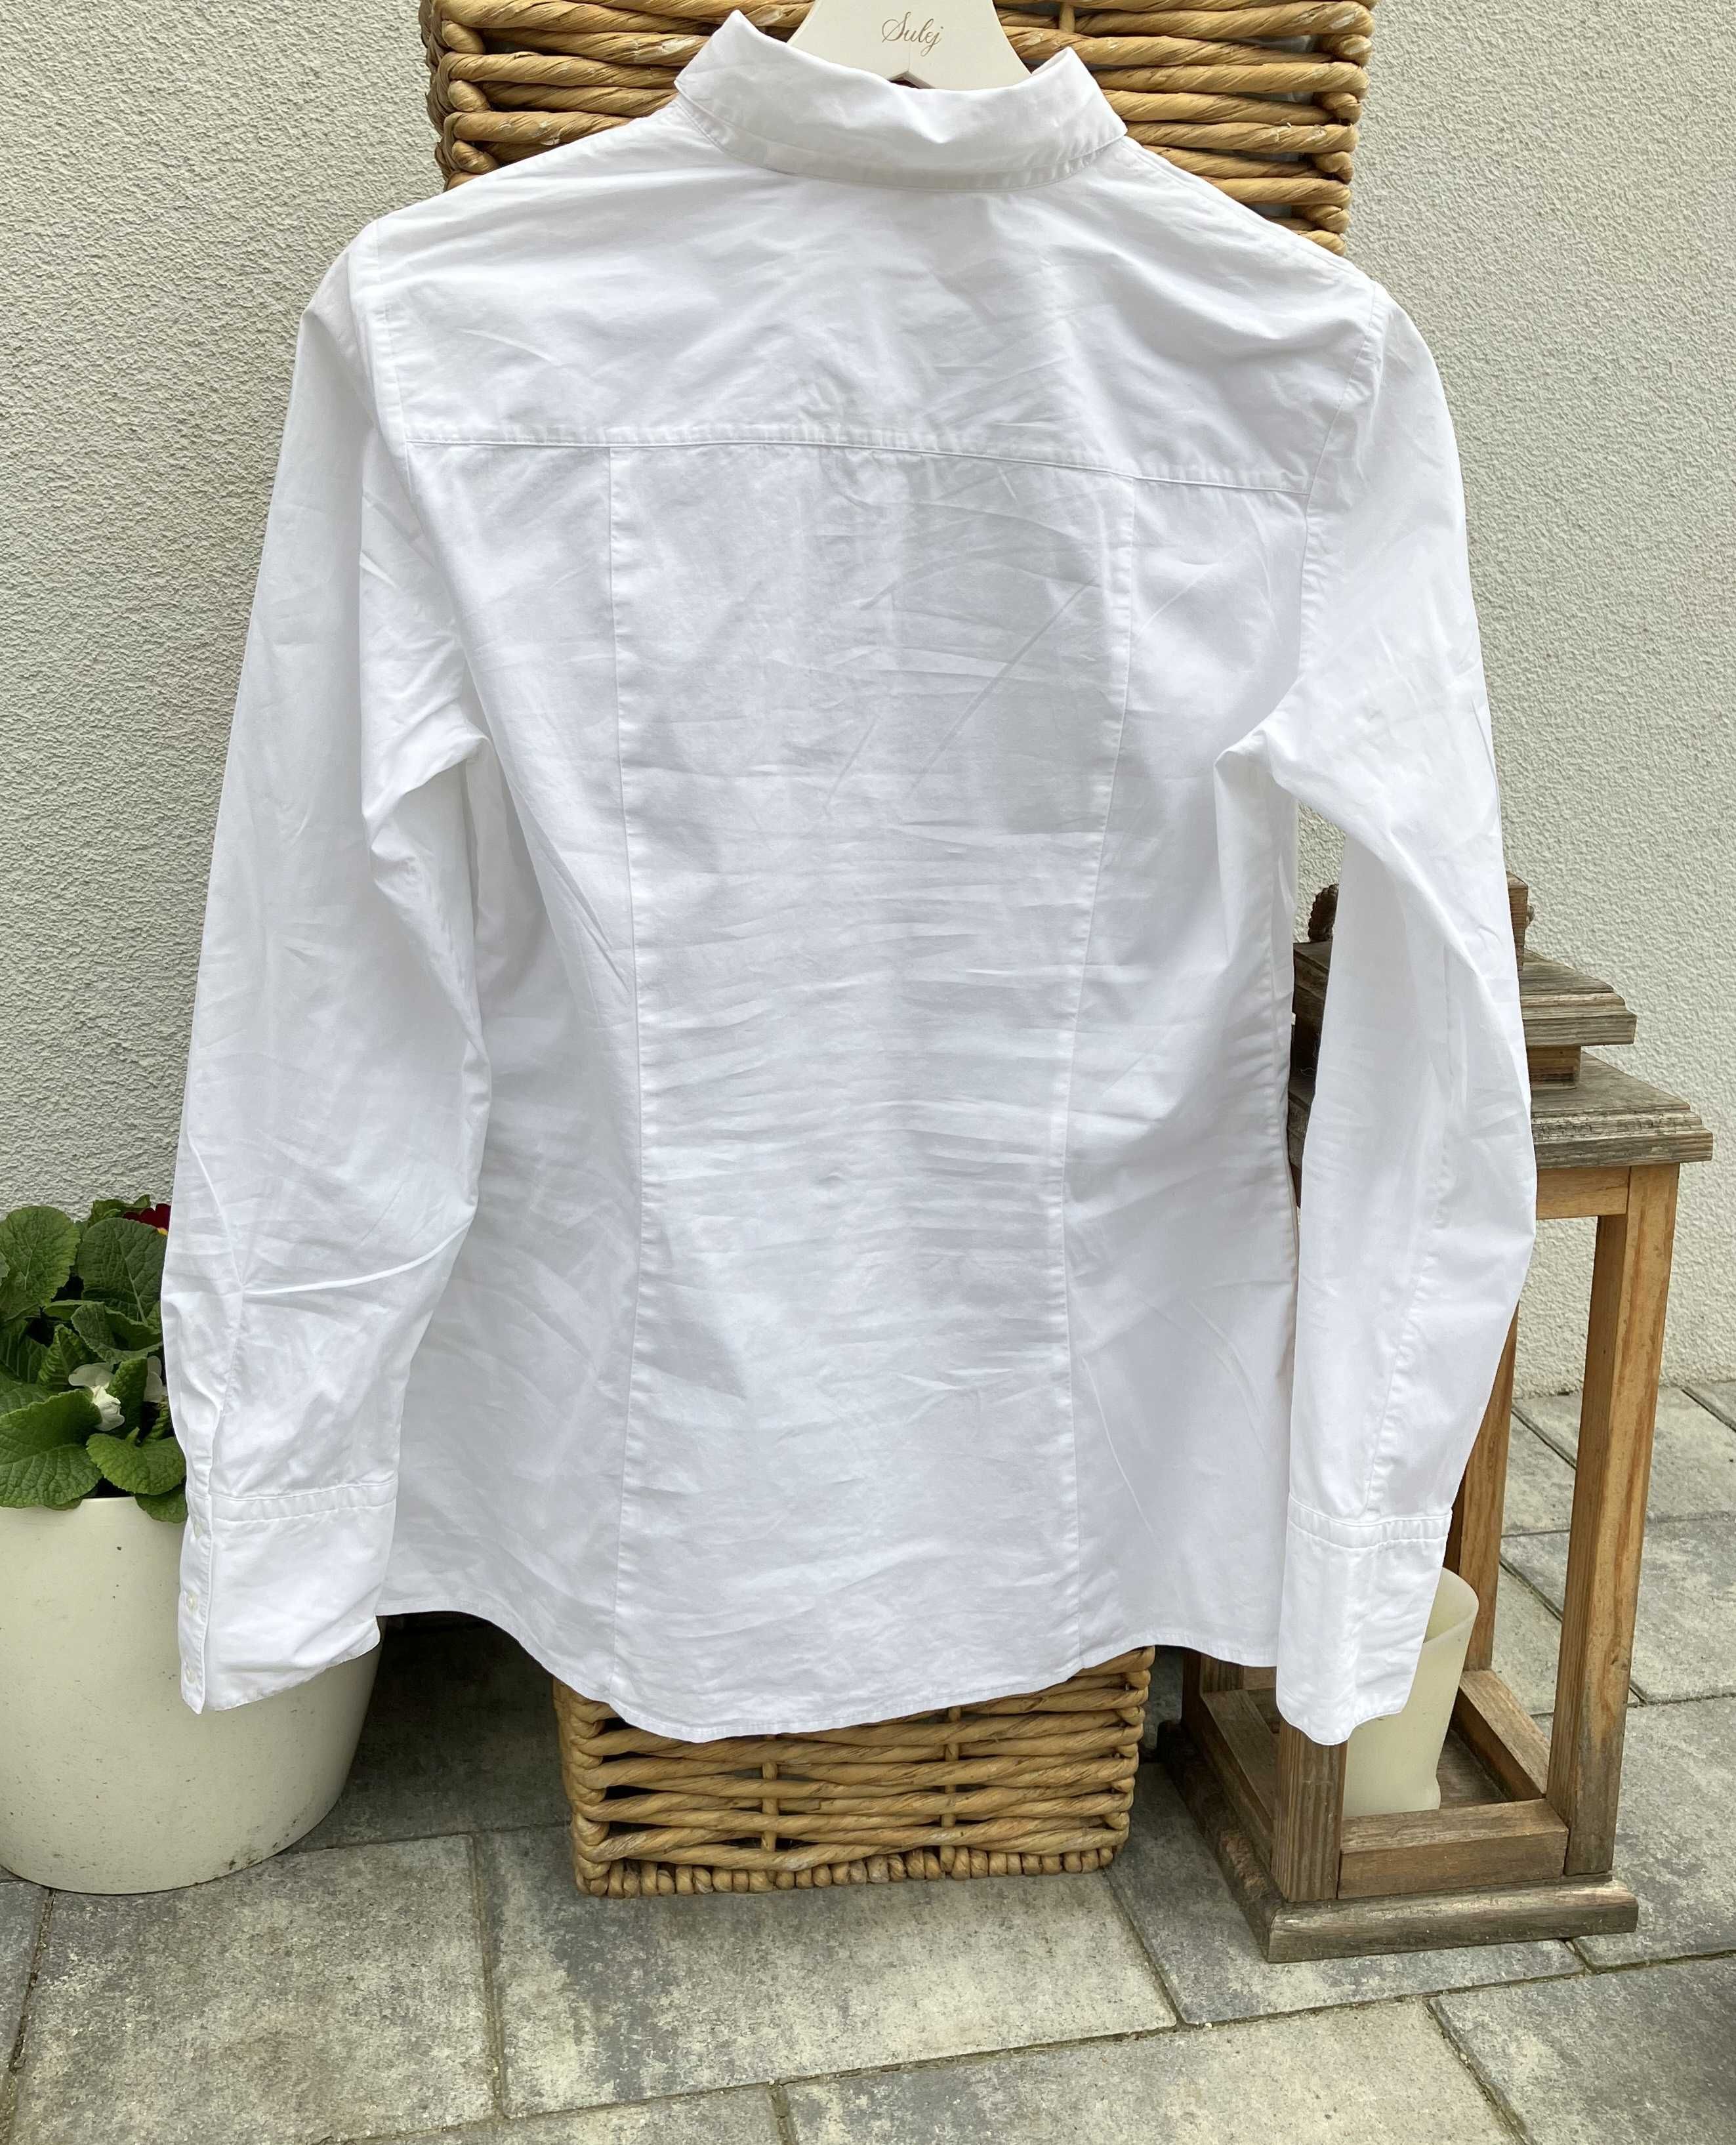 Hugo Boss biała koszula damska taliowana basic elegancka